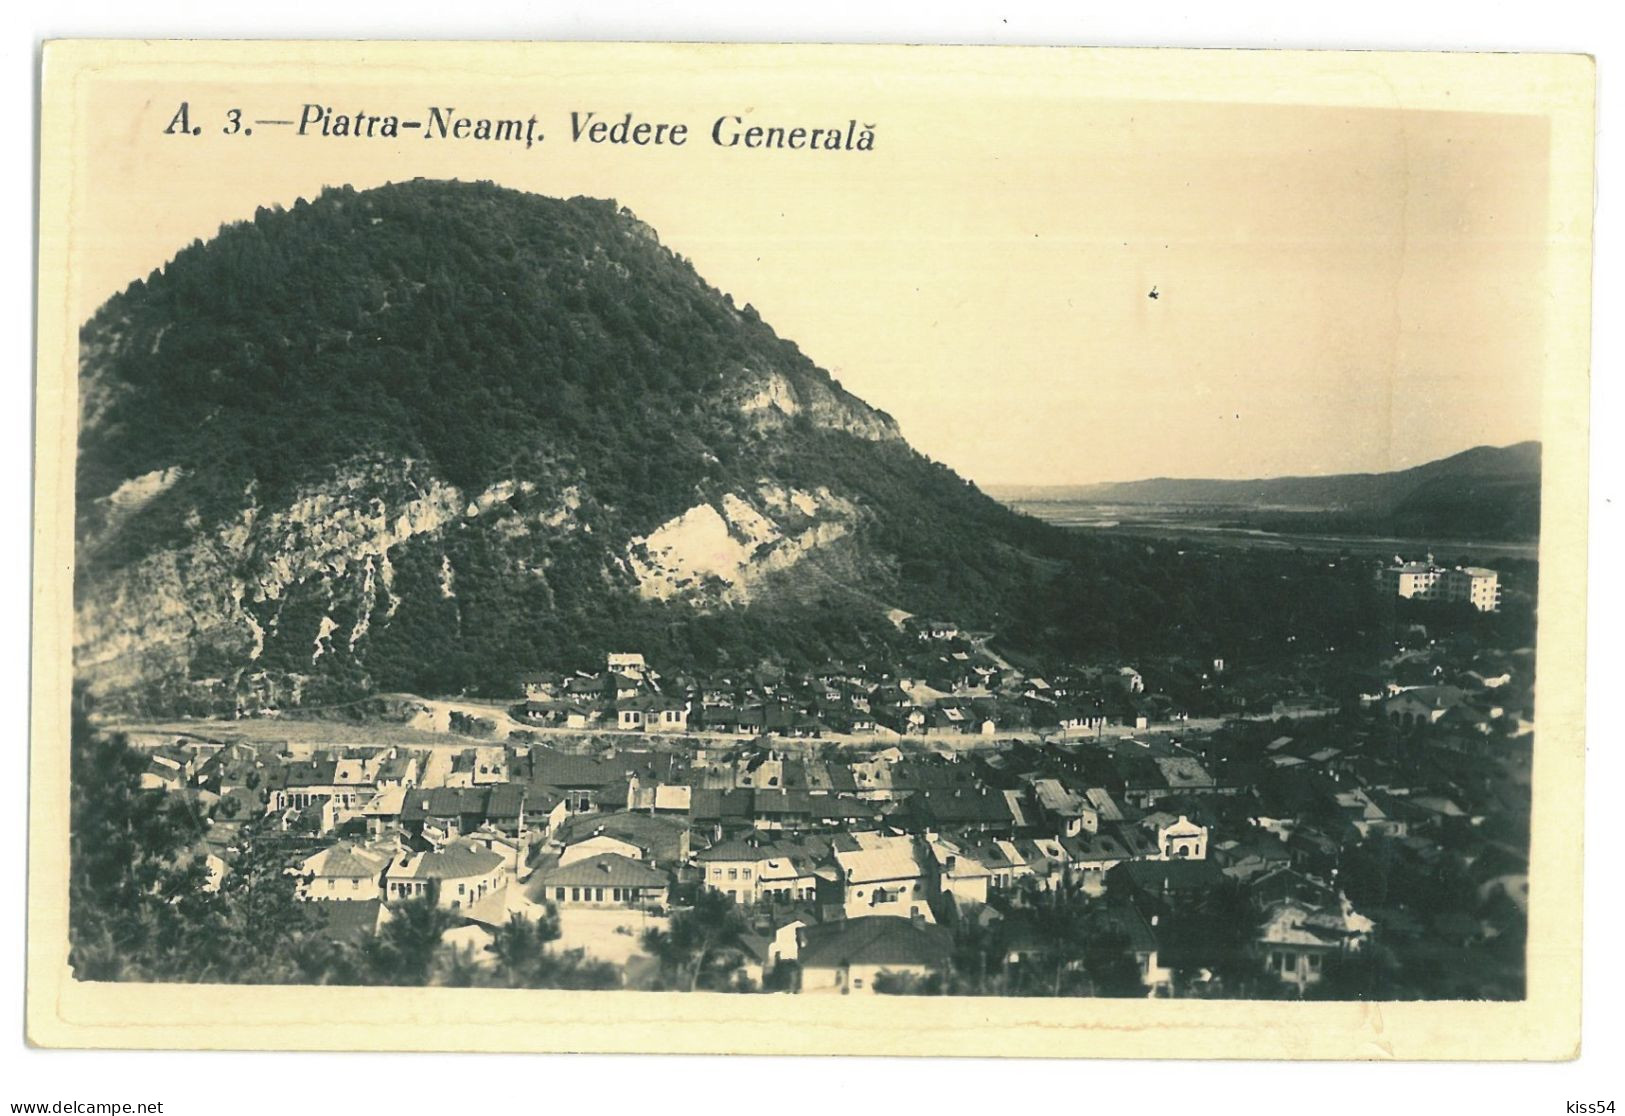 RO 47 - 23724 PIATRA NEAMT, Panorama, Romania - Old Postcard - Used - 1941 - Roumanie